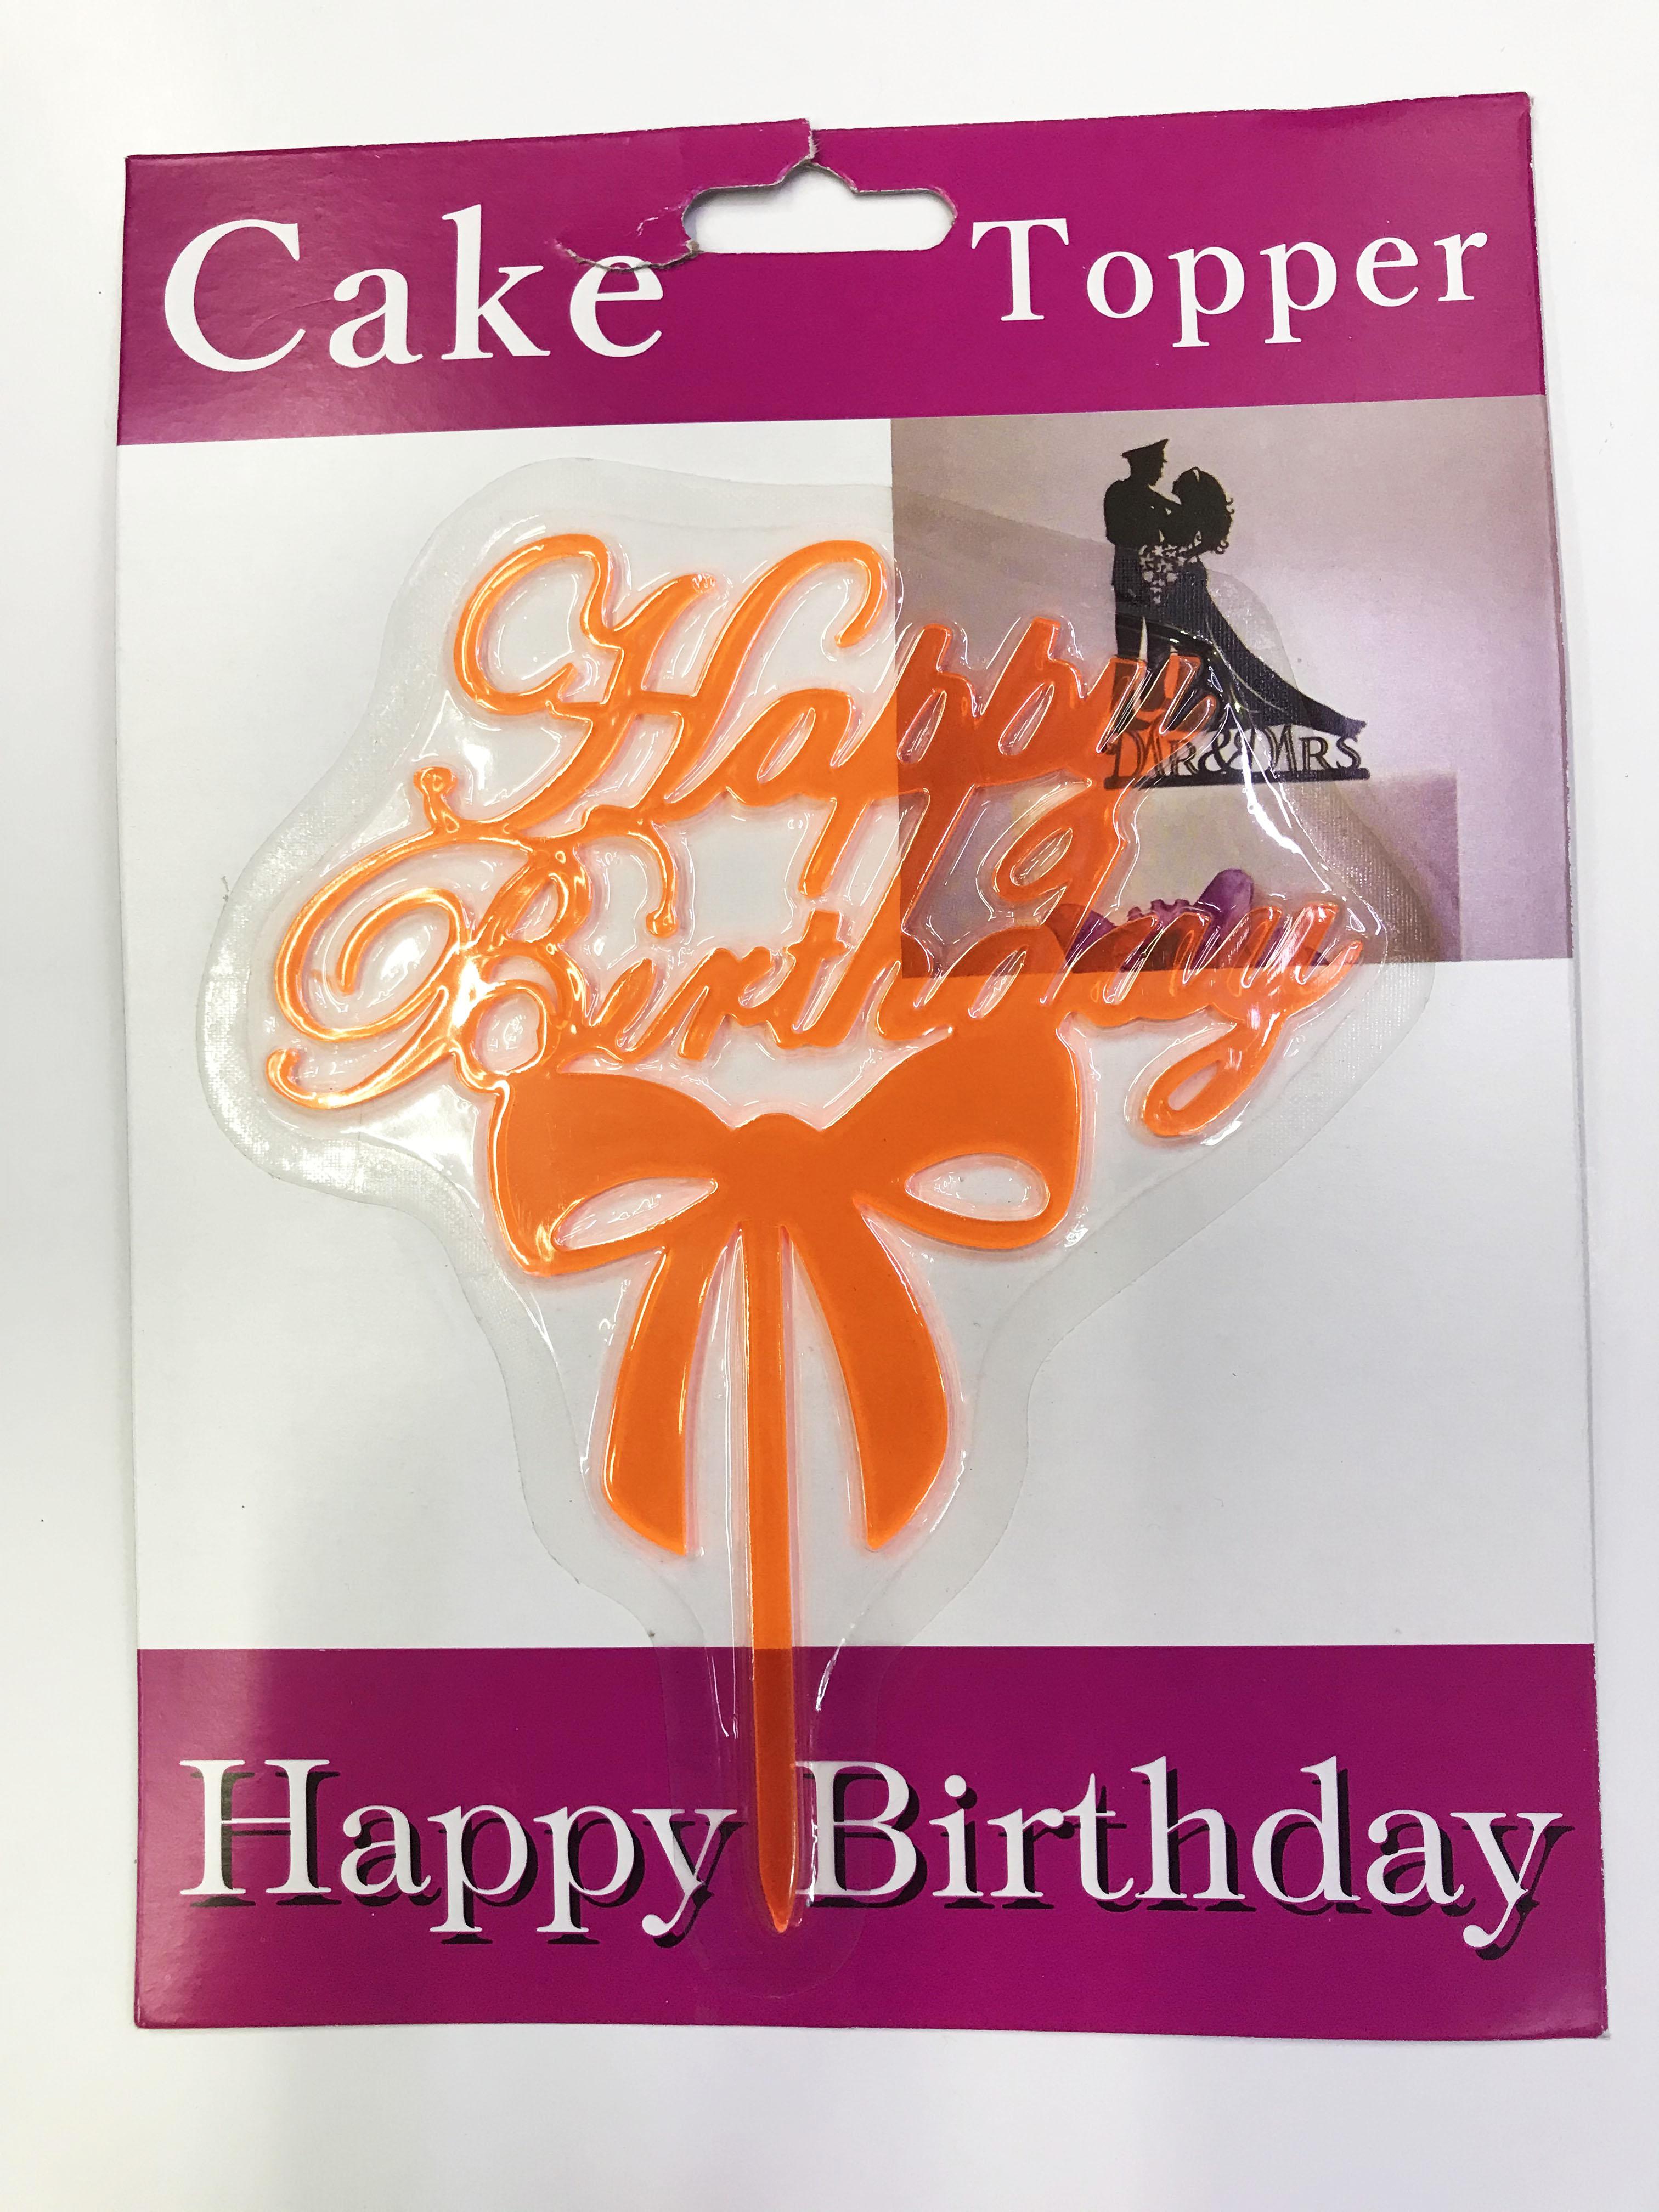 Happy Birthday Yazılı Fiyonklu Pasta Kek Çubuğu Turuncu Renk (CLZ)